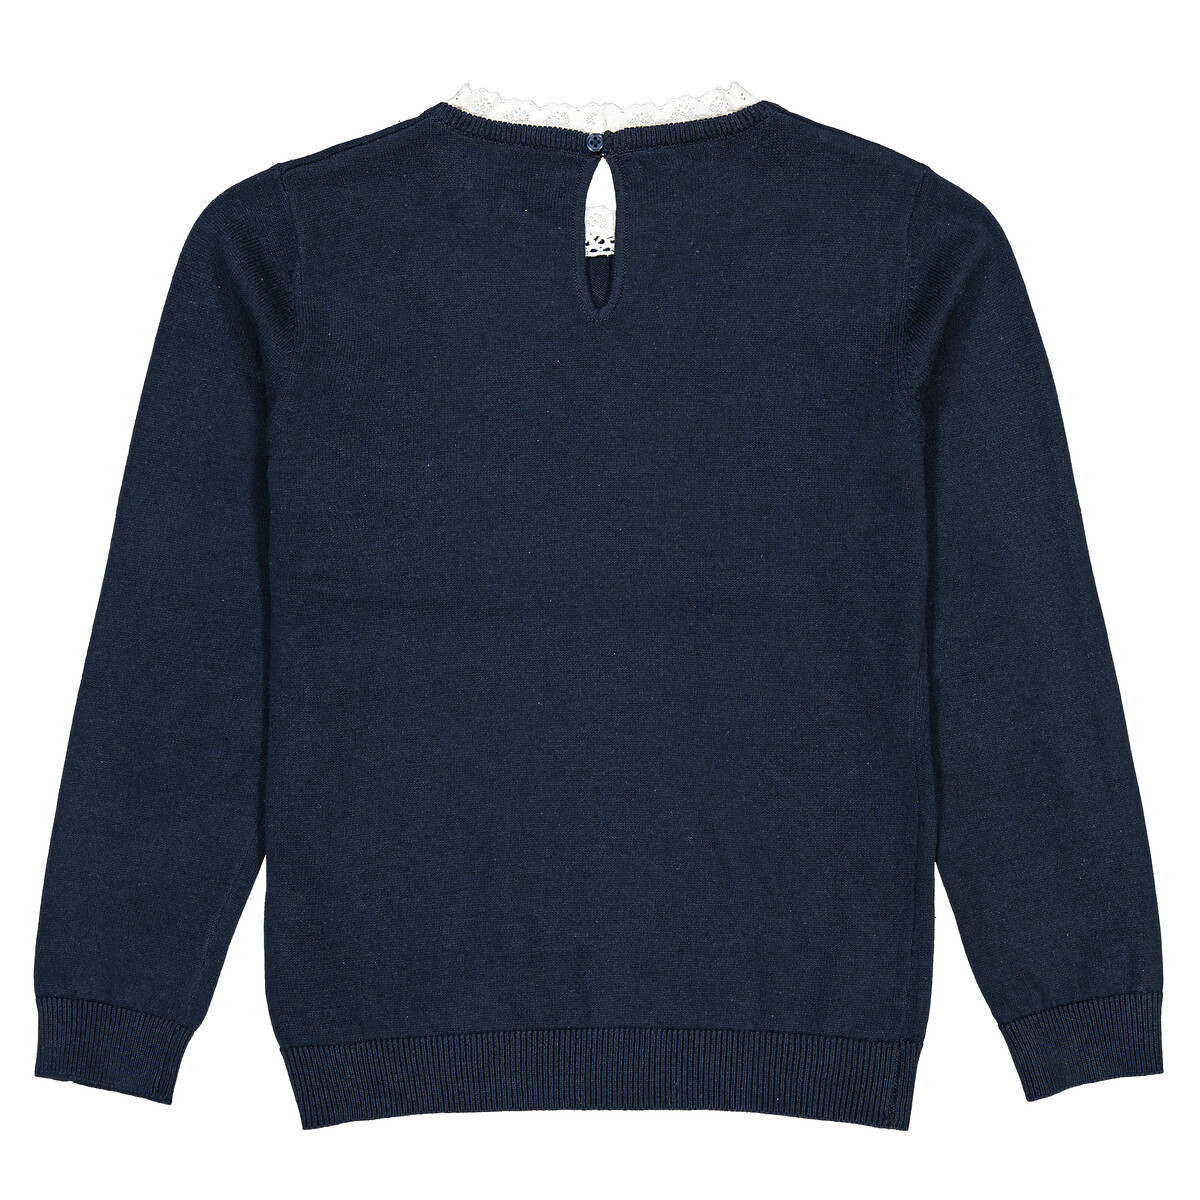 Пуловер Из тонкого трикотажа вырез с эффектом два в одном 5 лет - 108 см синий LaRedoute, размер 5 лет - 108 см - фото 4